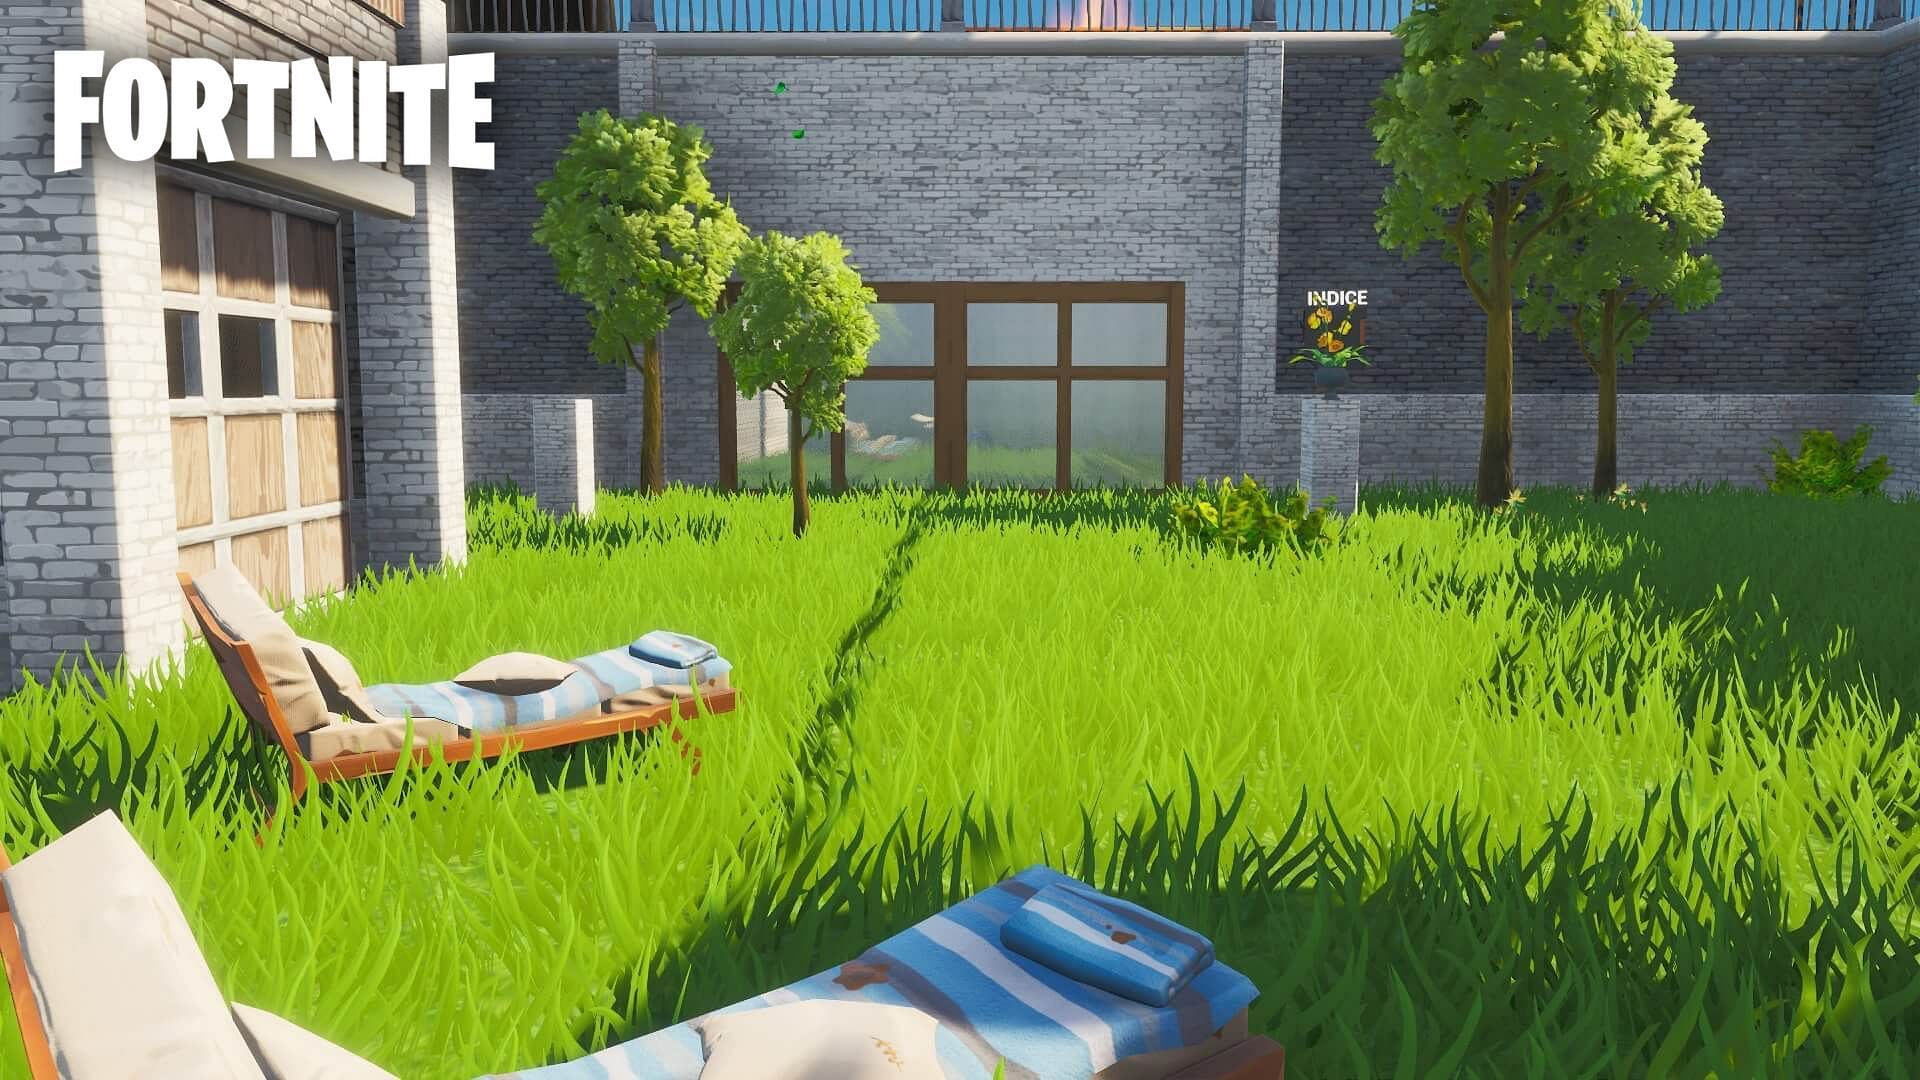 Flee da facility - Fortnite Creative Map Code - Dropnite